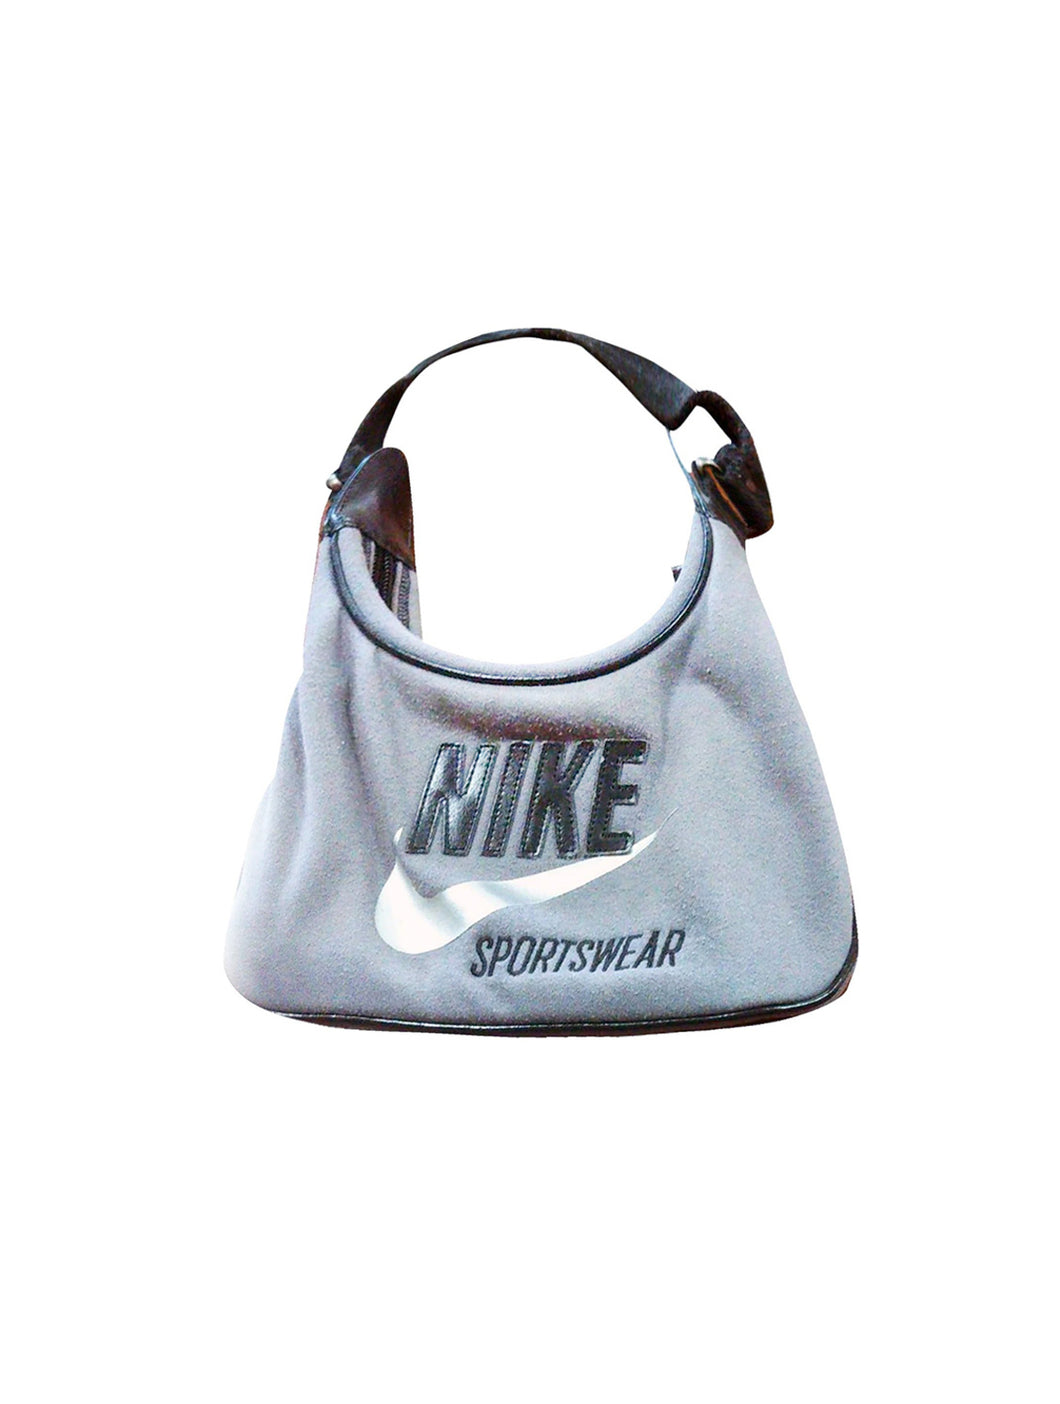 Nike Slate Gray Cloth Handbag